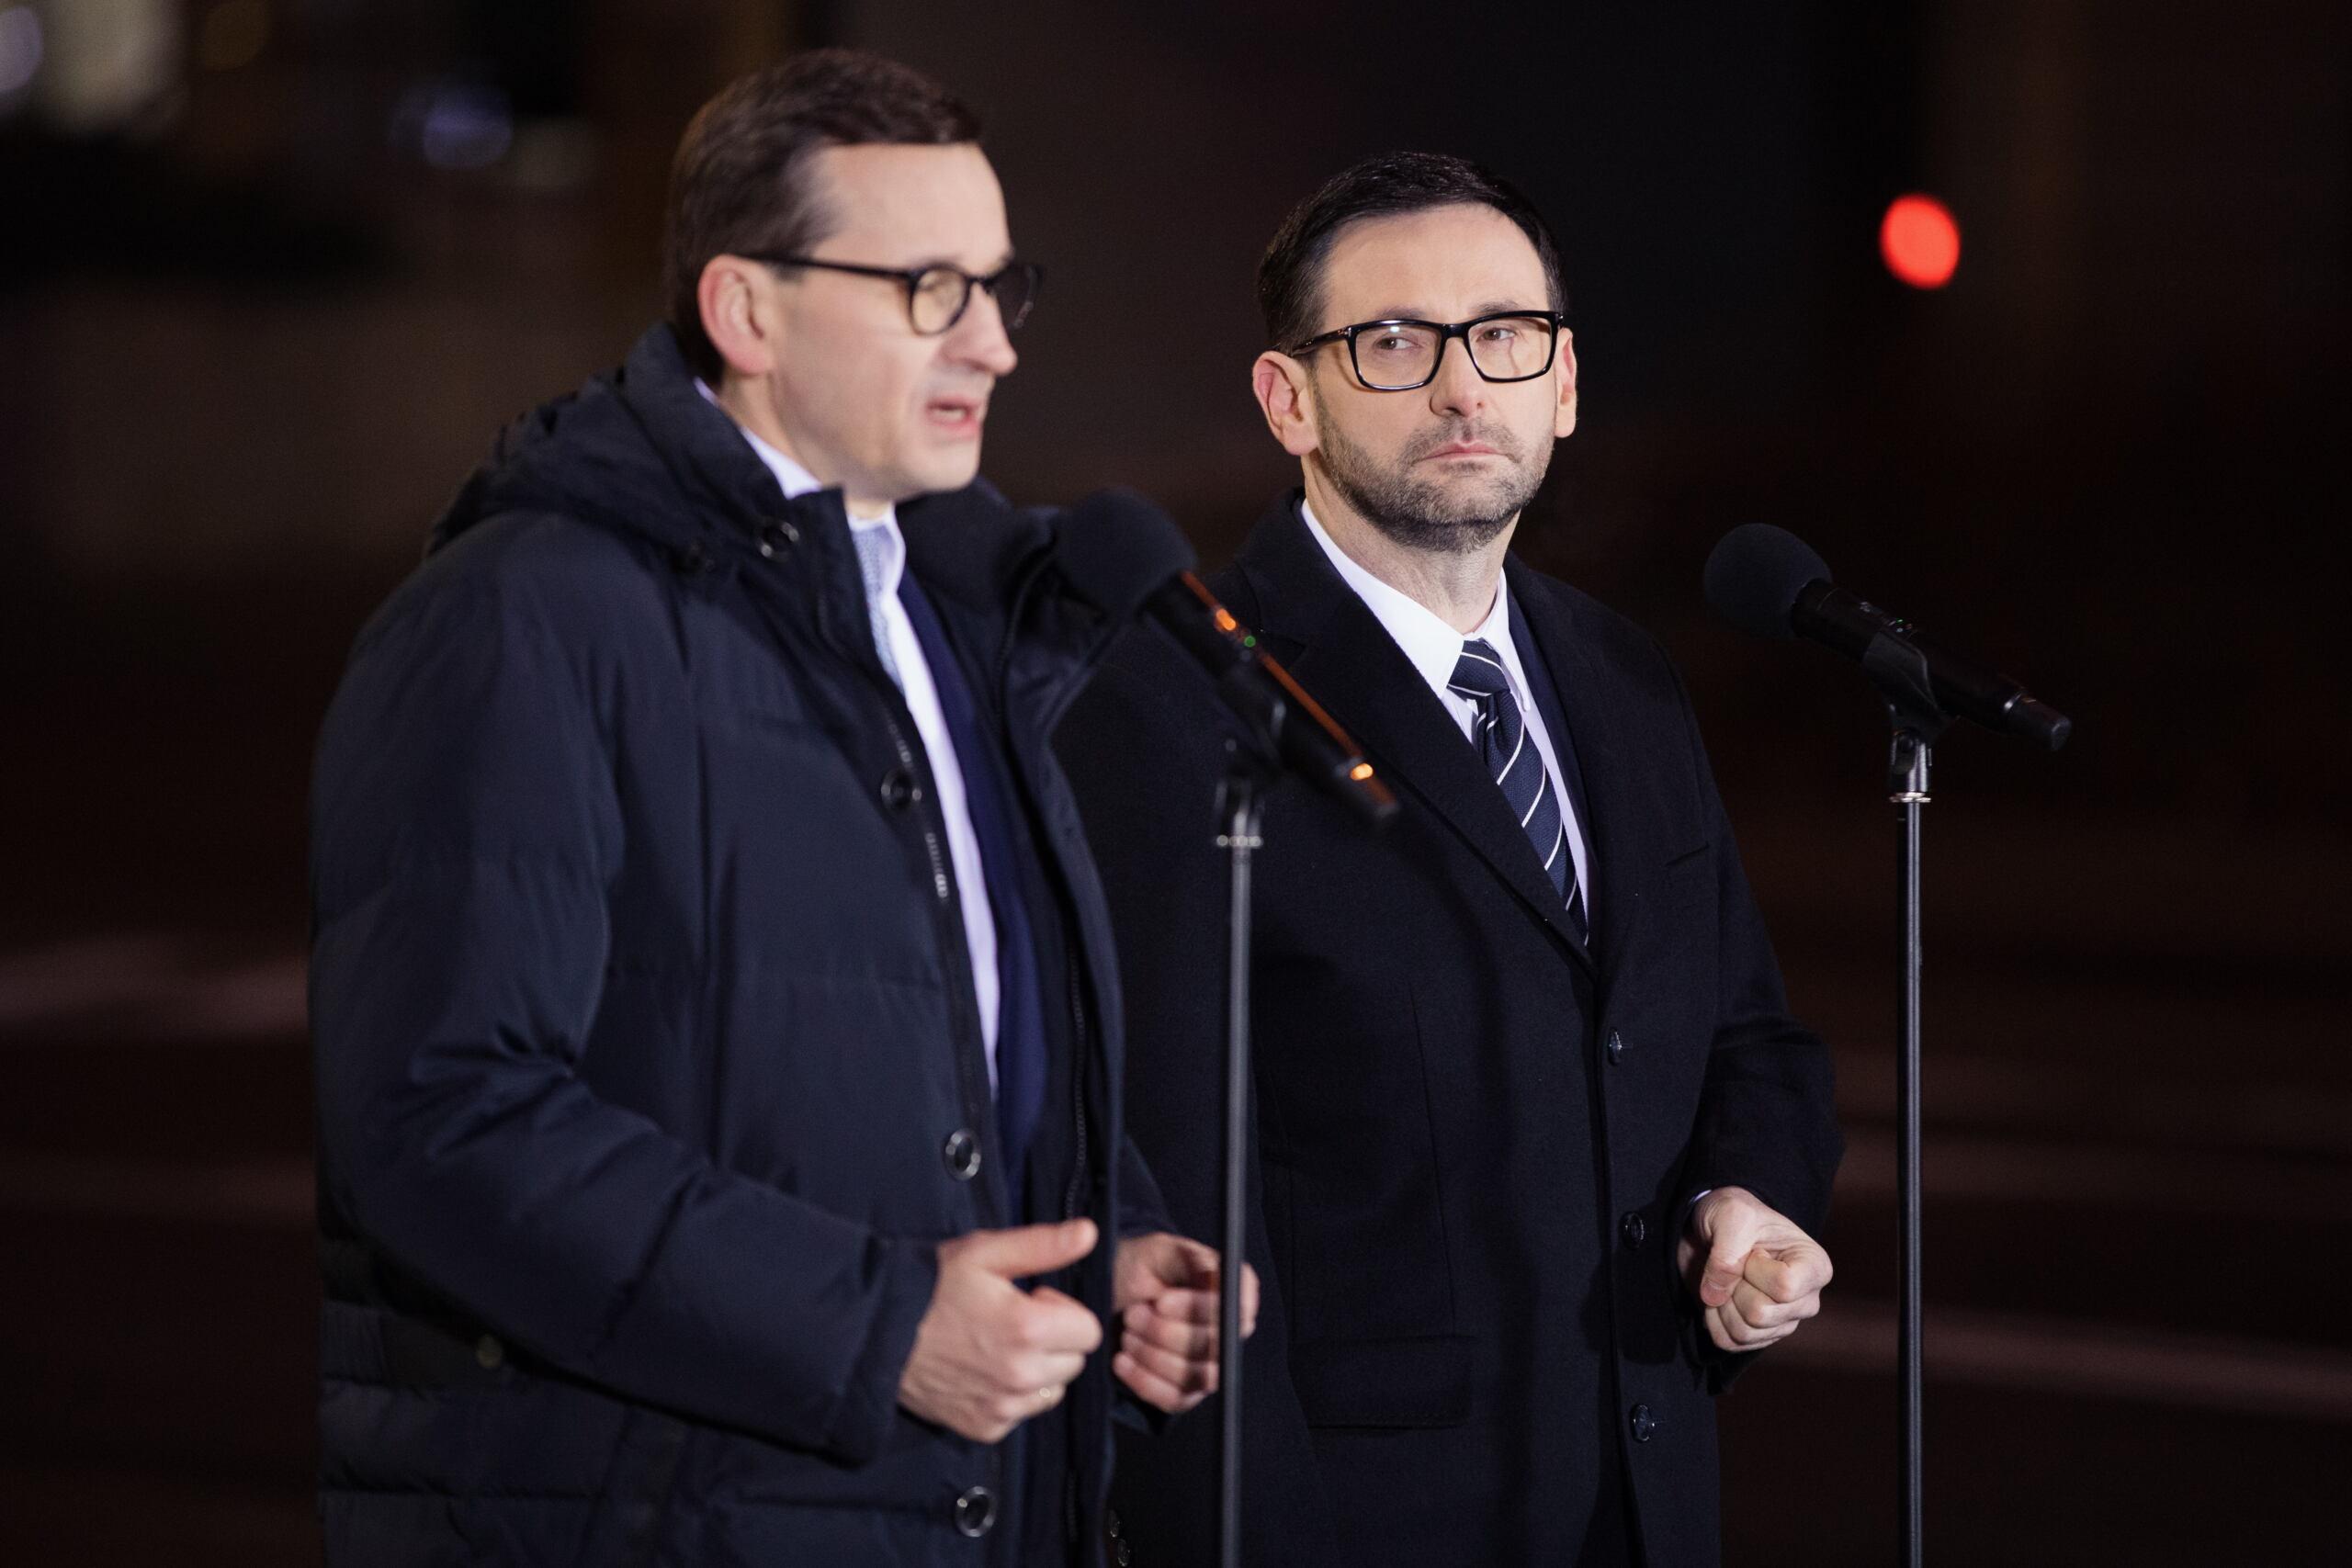 Z prawej stoi premier Mateusz Morawiecki, obok niego szef Orlenu Daniel Obajtek